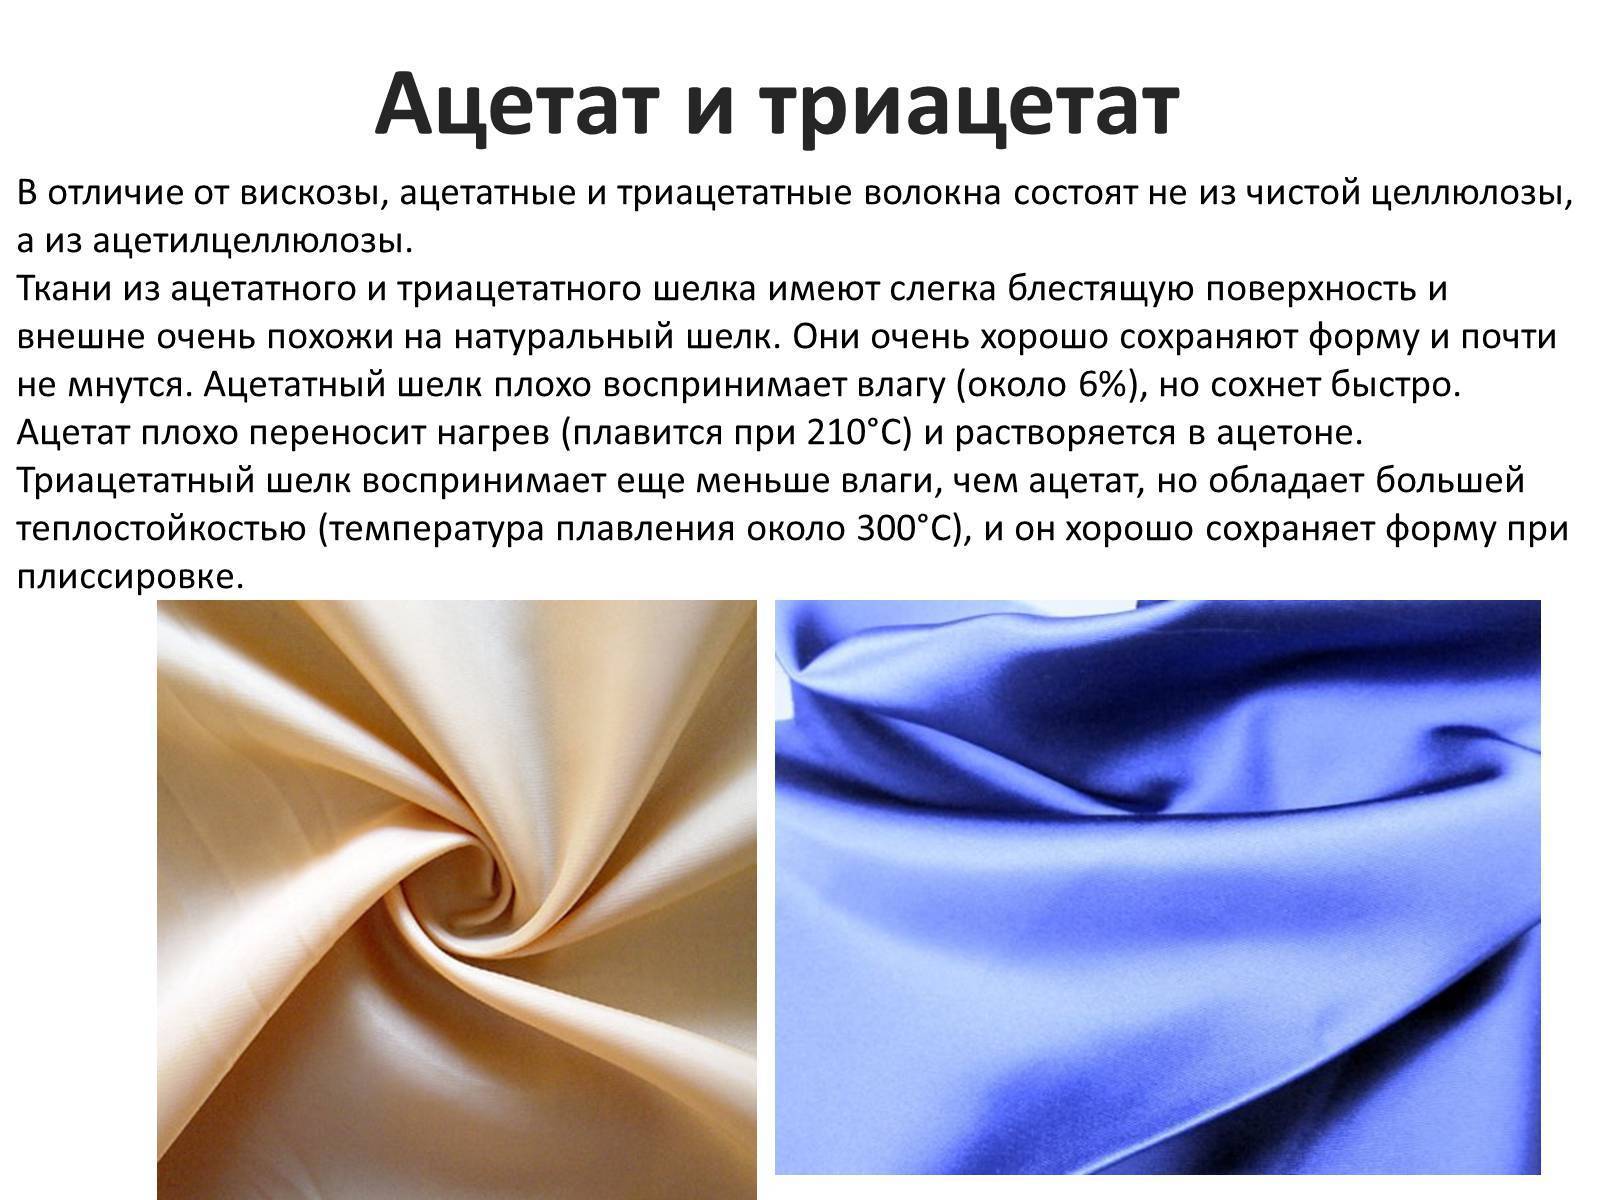 Rayon (район) что это за ткань - характеристики и состав материала